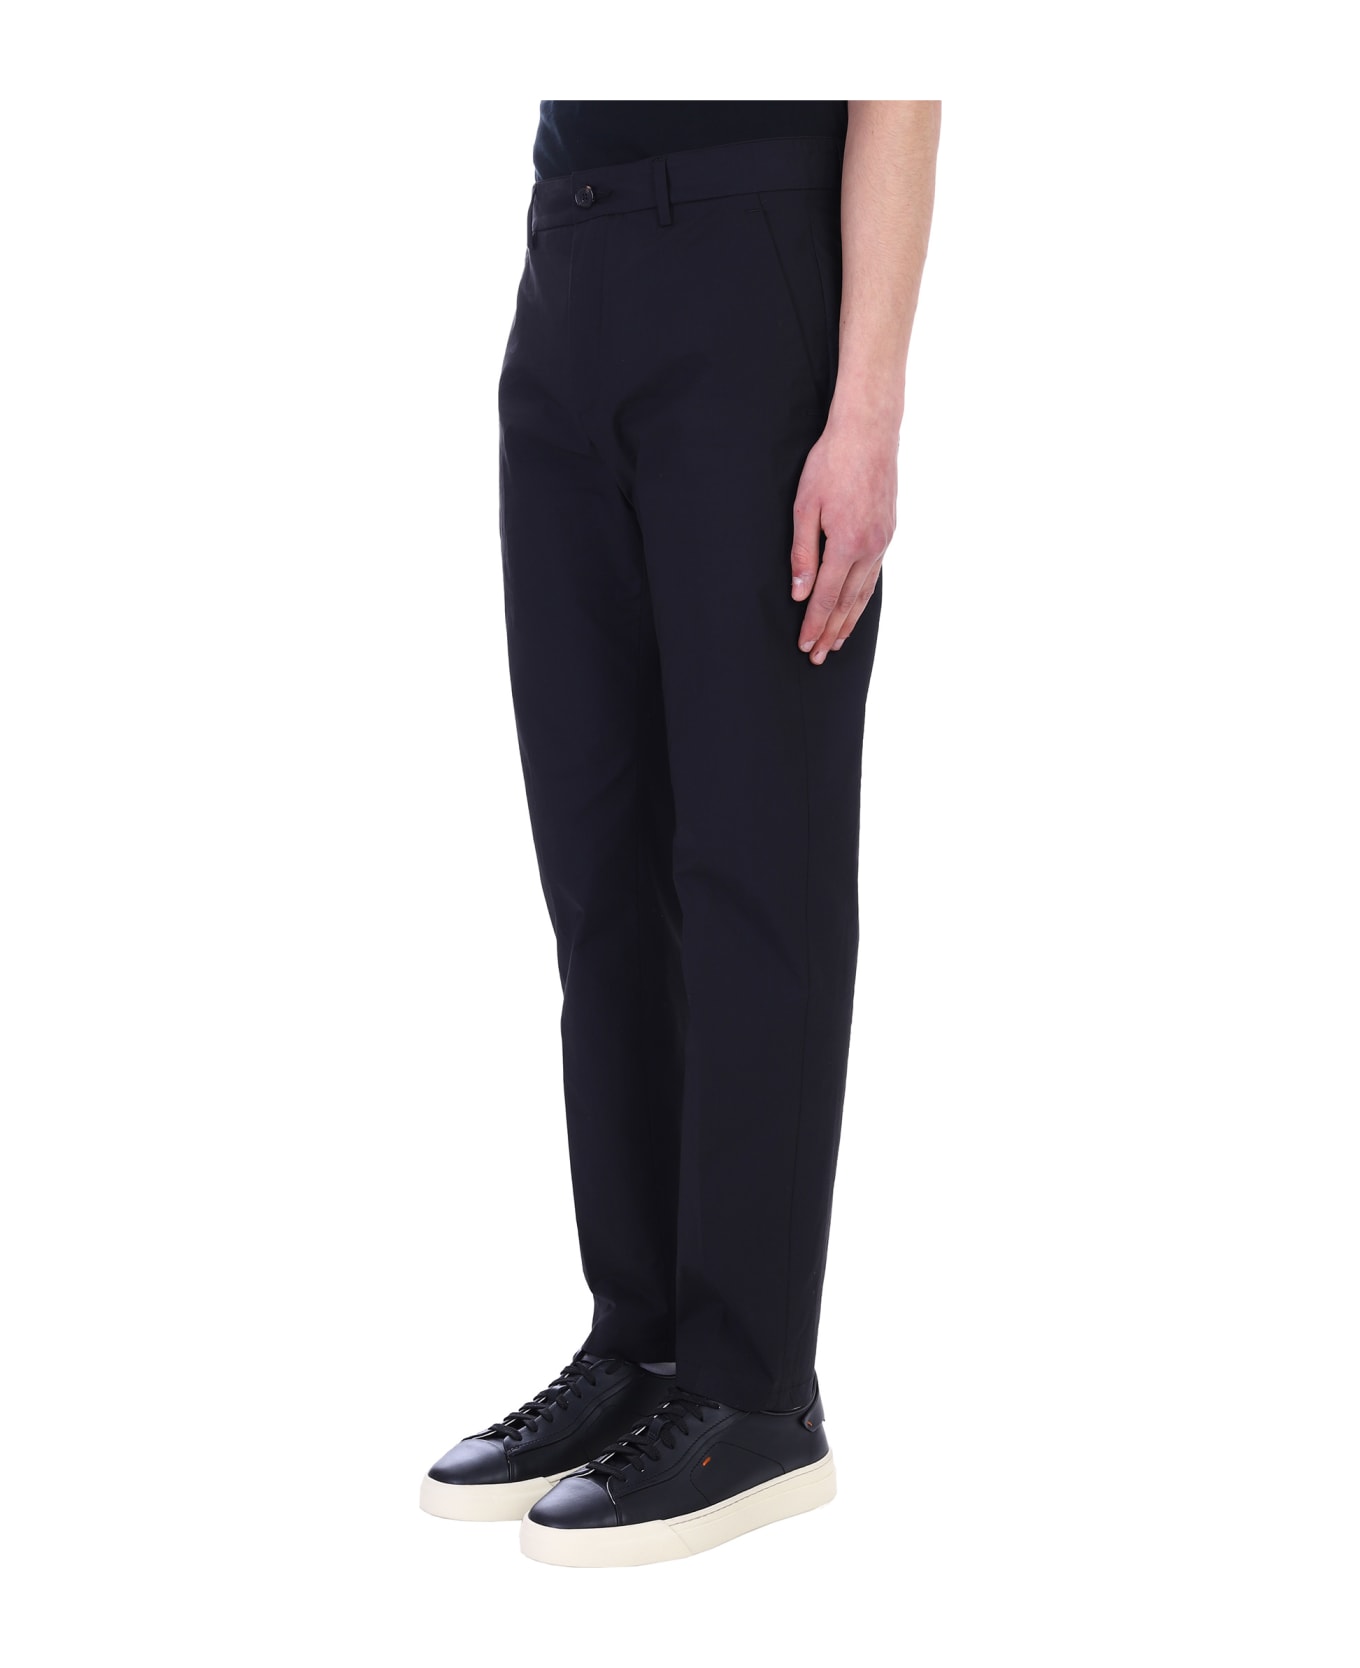 Department Five Pants In Black Cotton - black